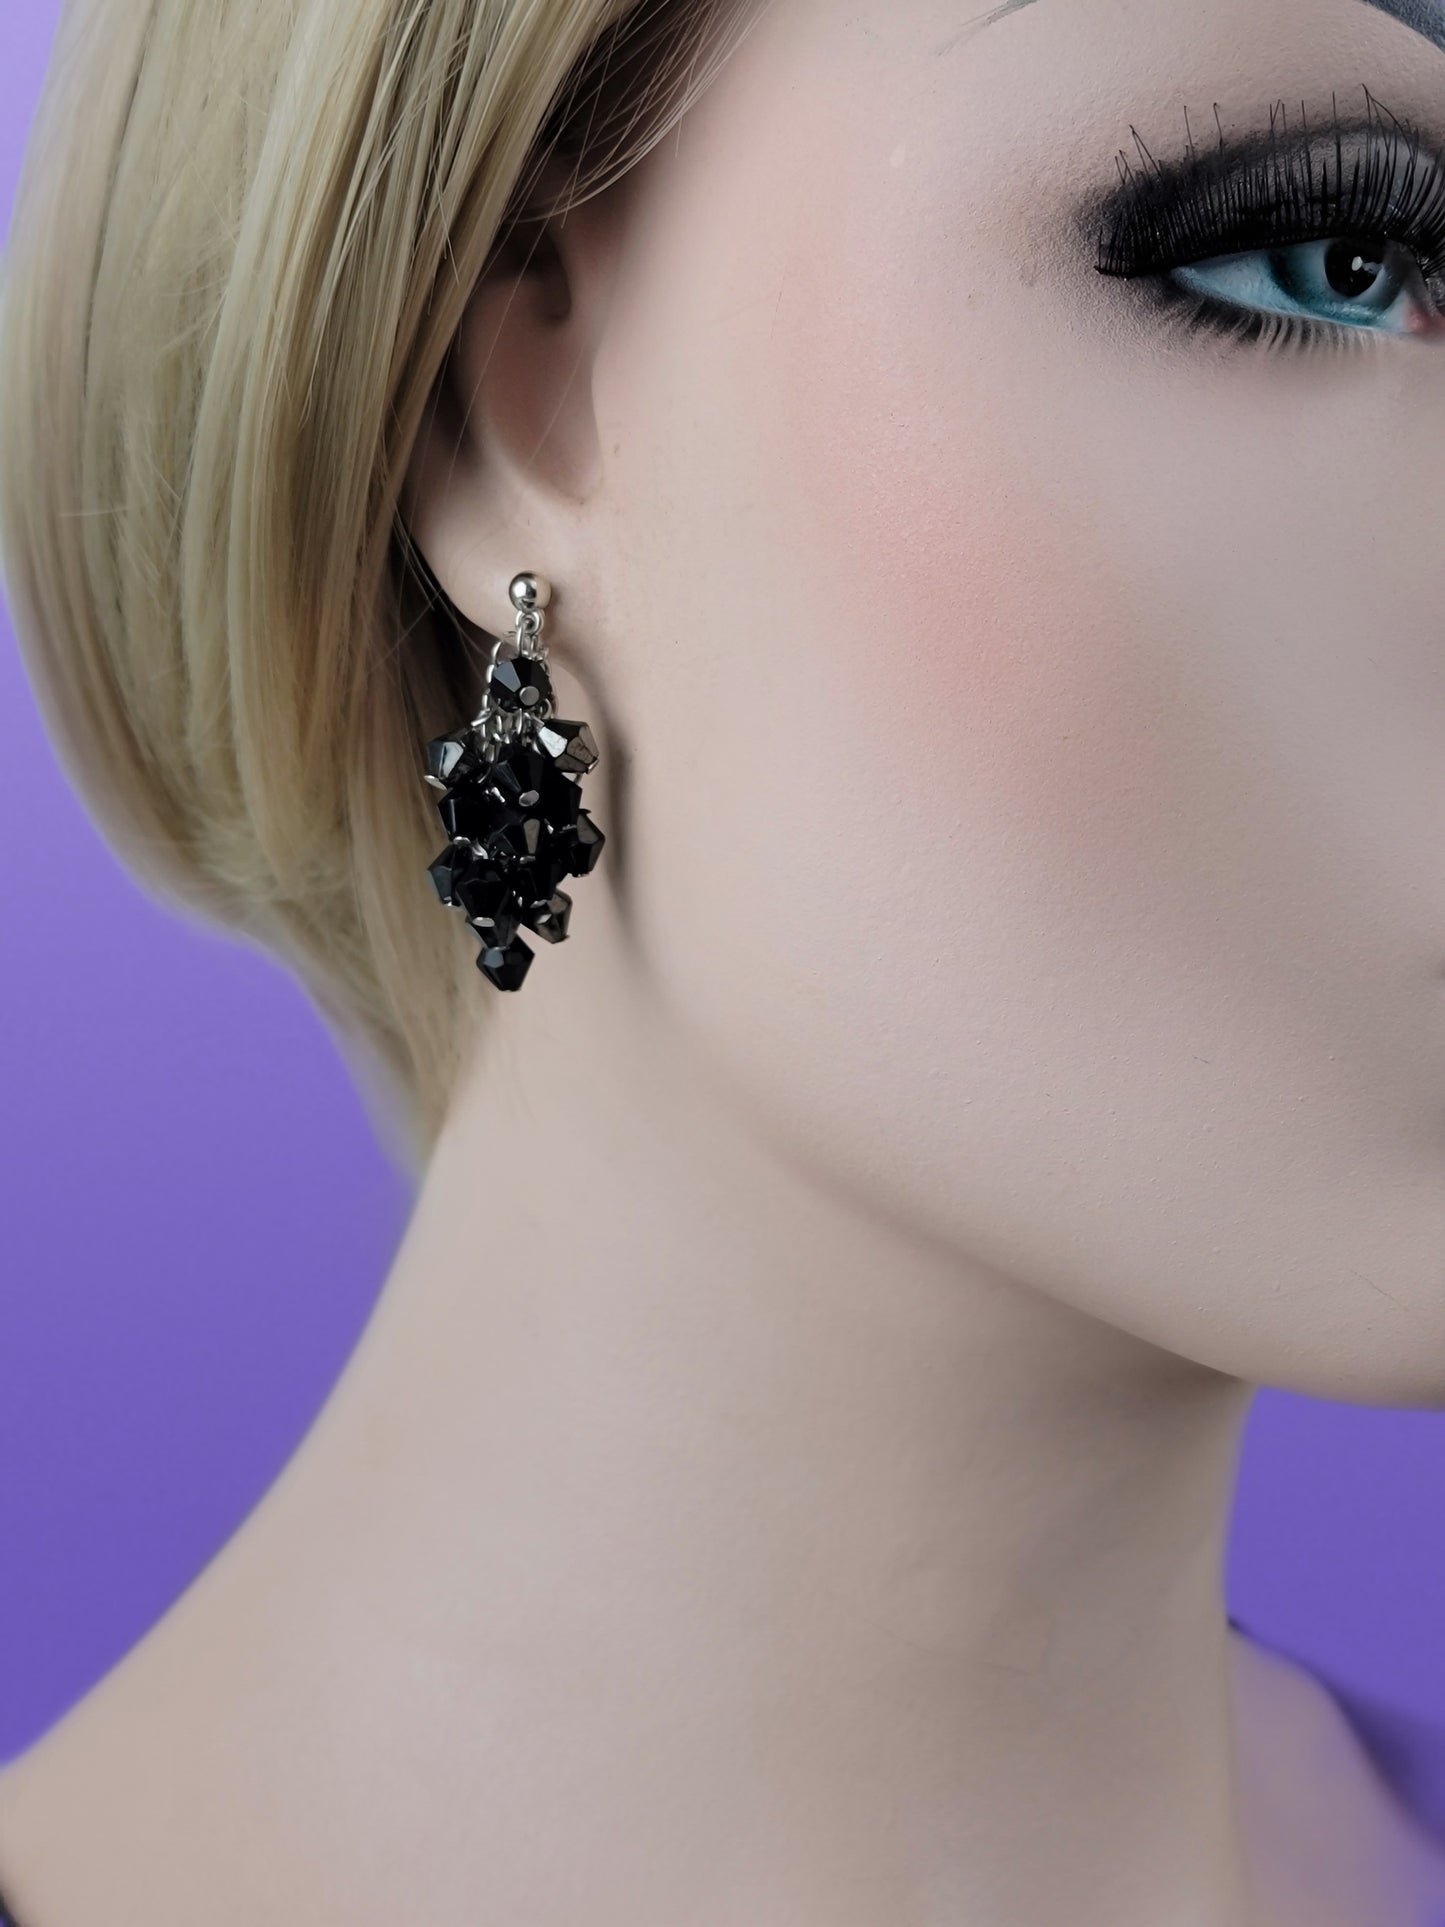 Black & Silver Faux Crystal Silver Tone Chandelier Beaded Pierced Earrings 1/2"